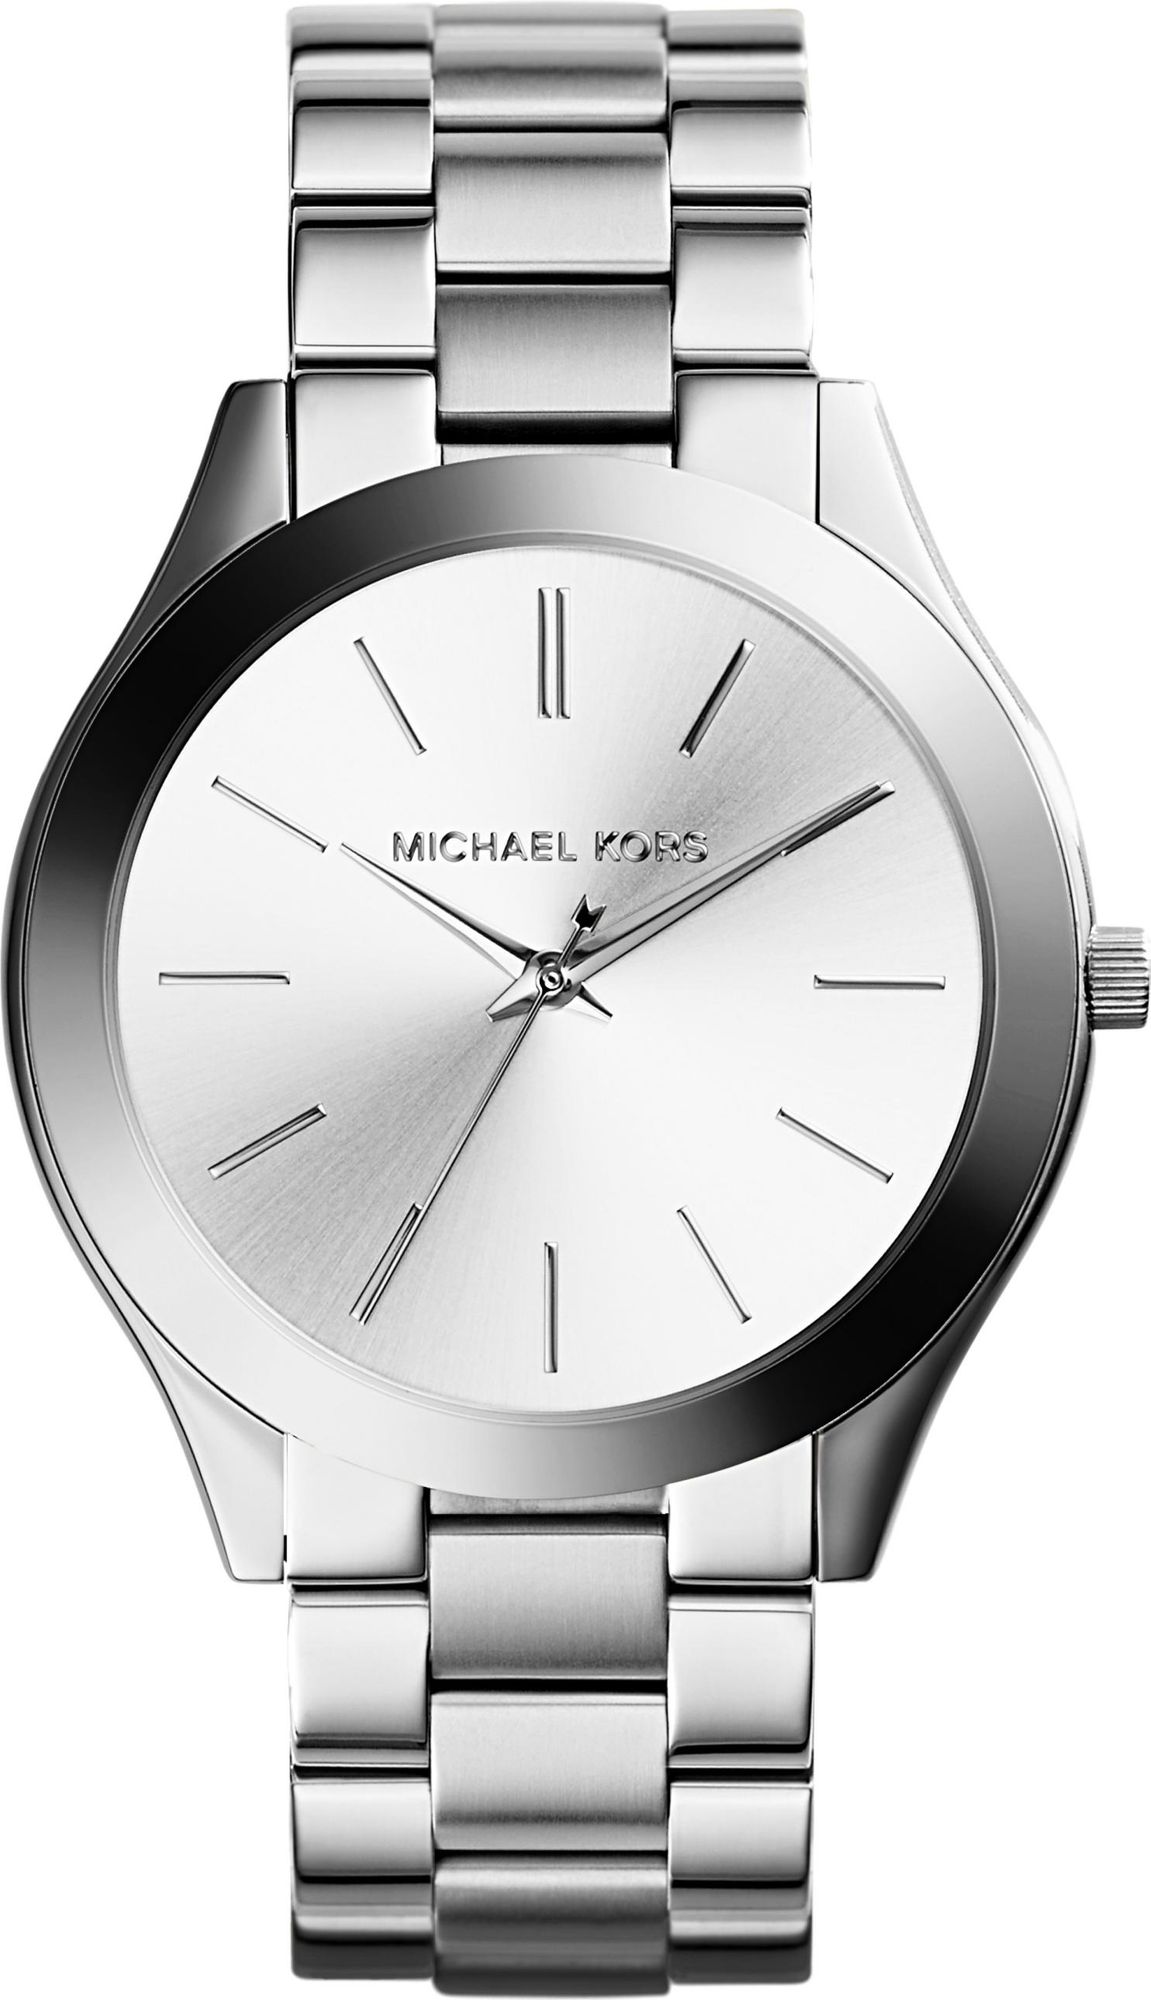 Michael Kors SLIM RUNWAY MK3178 Wristwatch for women Design Highlight